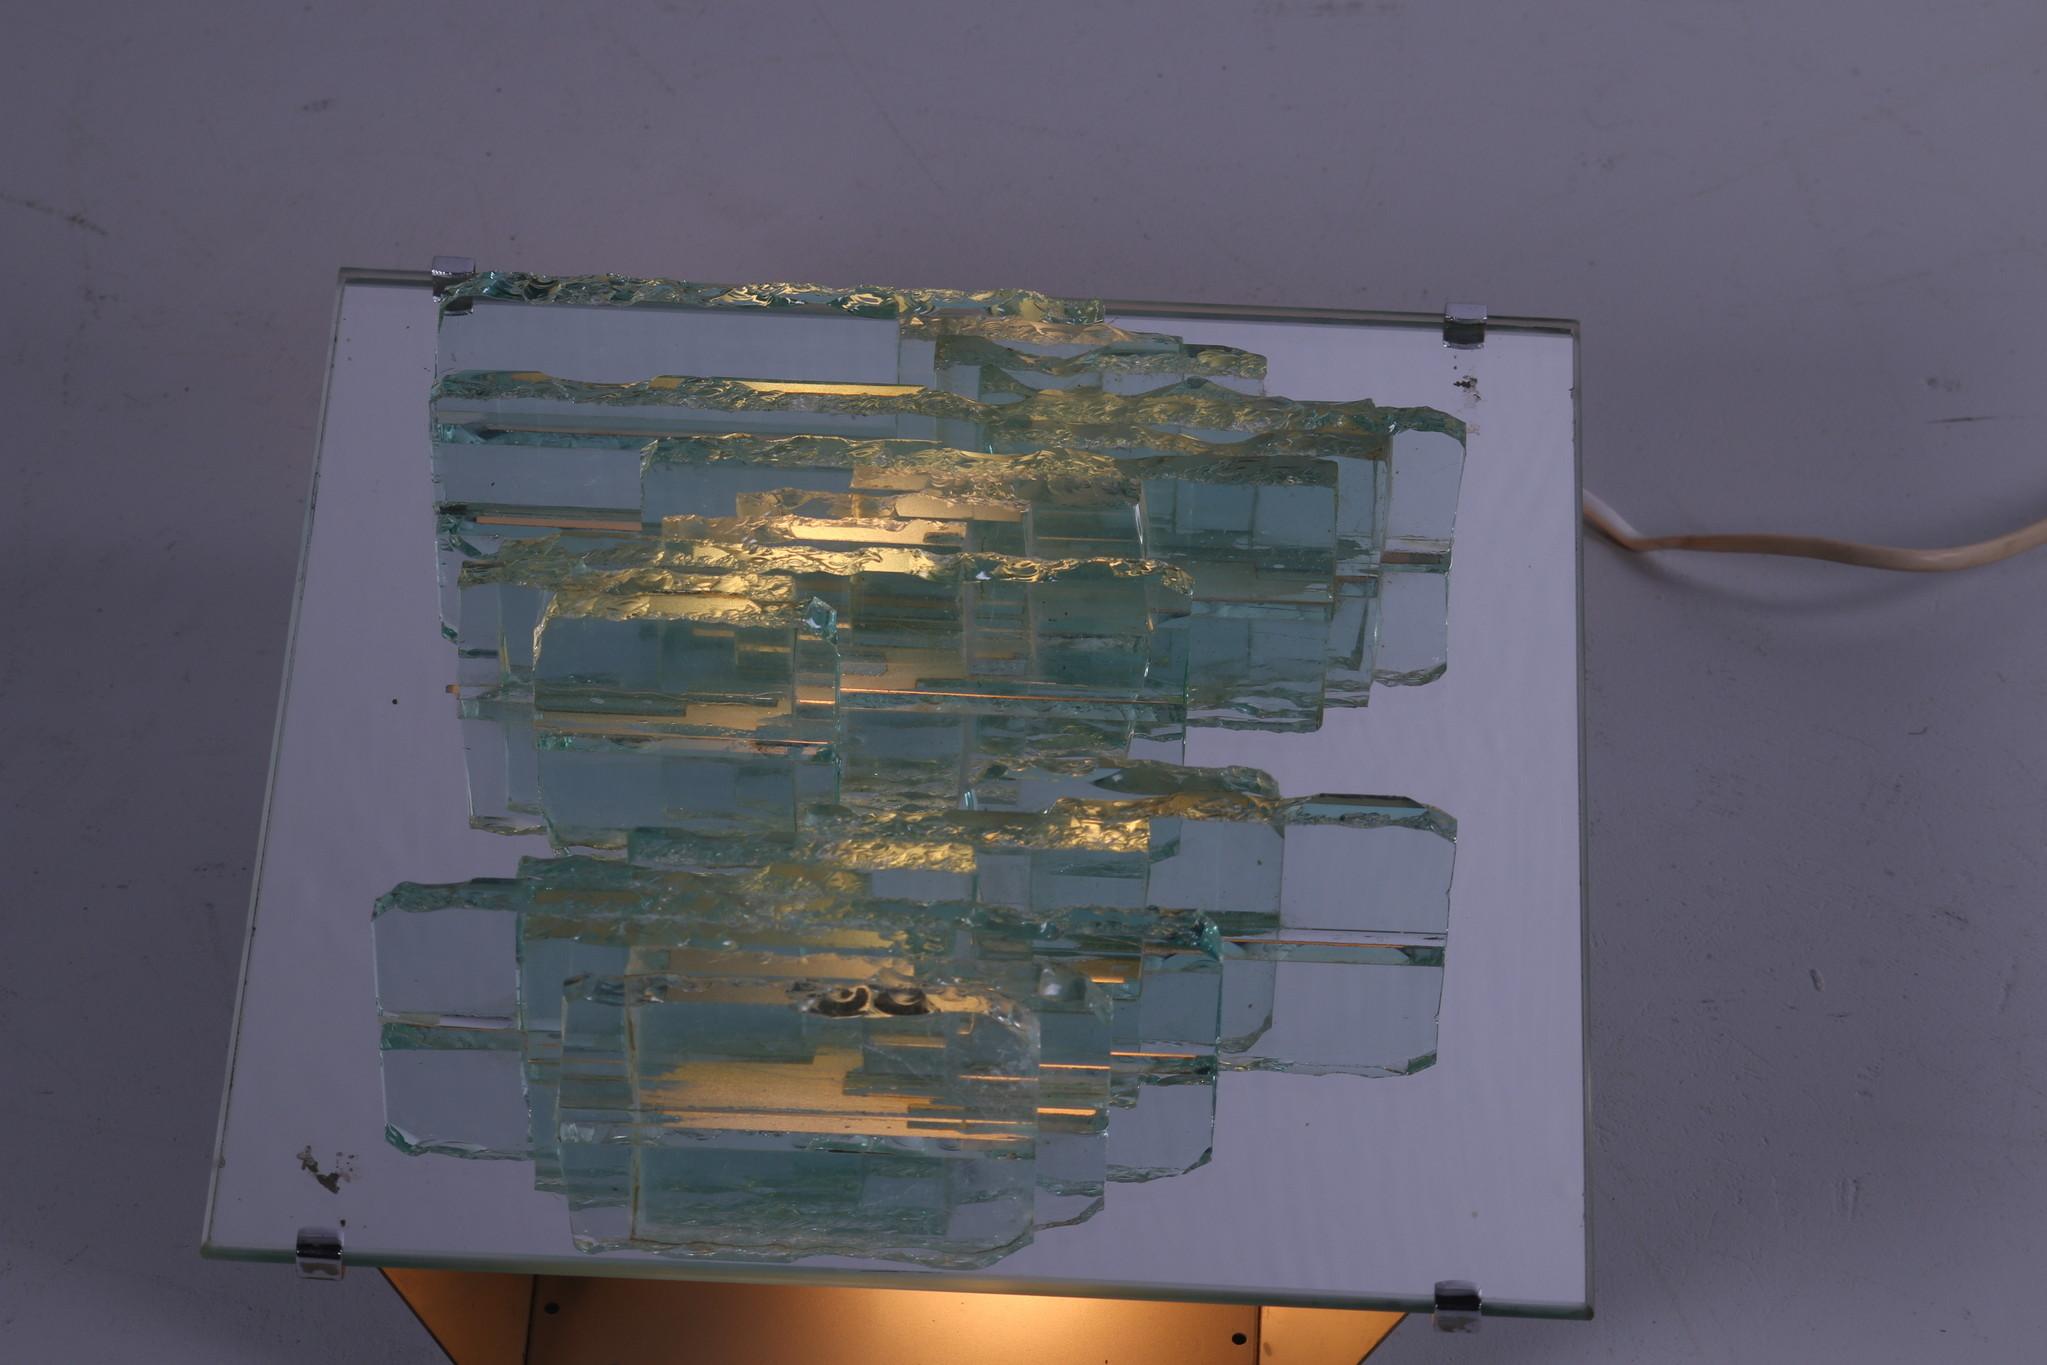 Wandleuchte aus zerbrochenem Glas von Willem Van Oyen für Raak Amsterdam, 1960er Jahre (20. Jahrhundert)